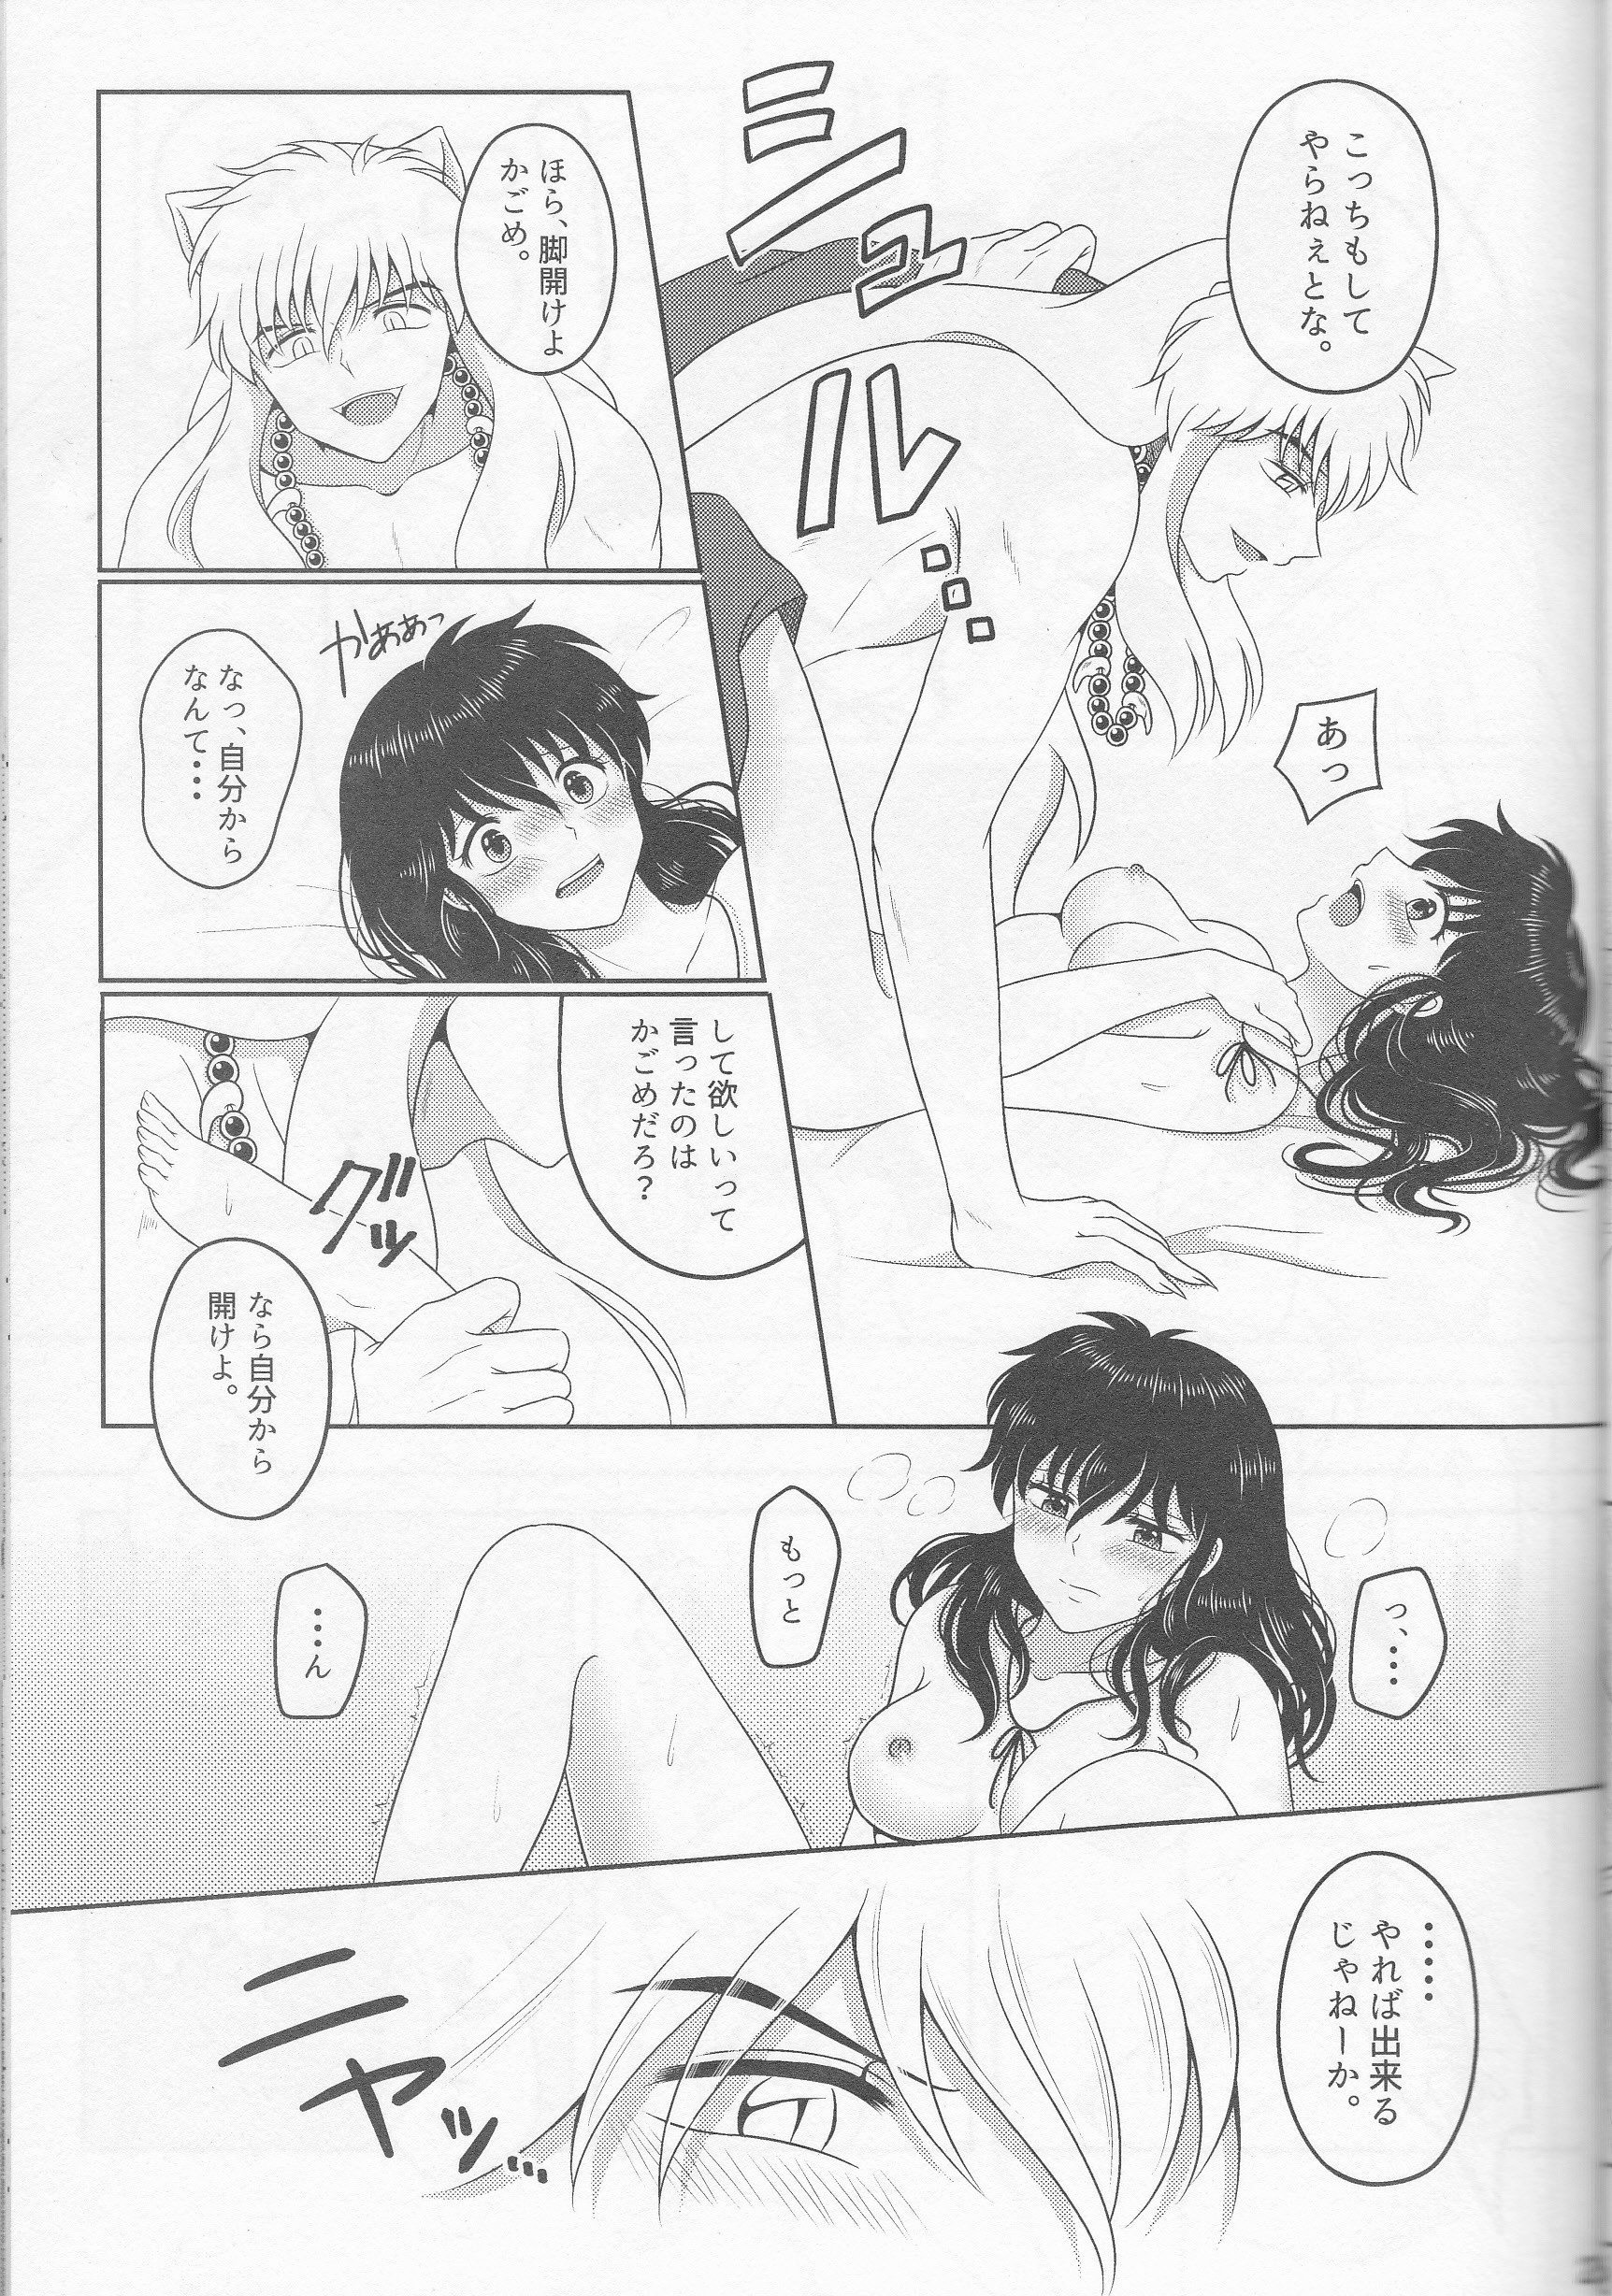 Koi Gusuri - Love drug hentai manga picture 20